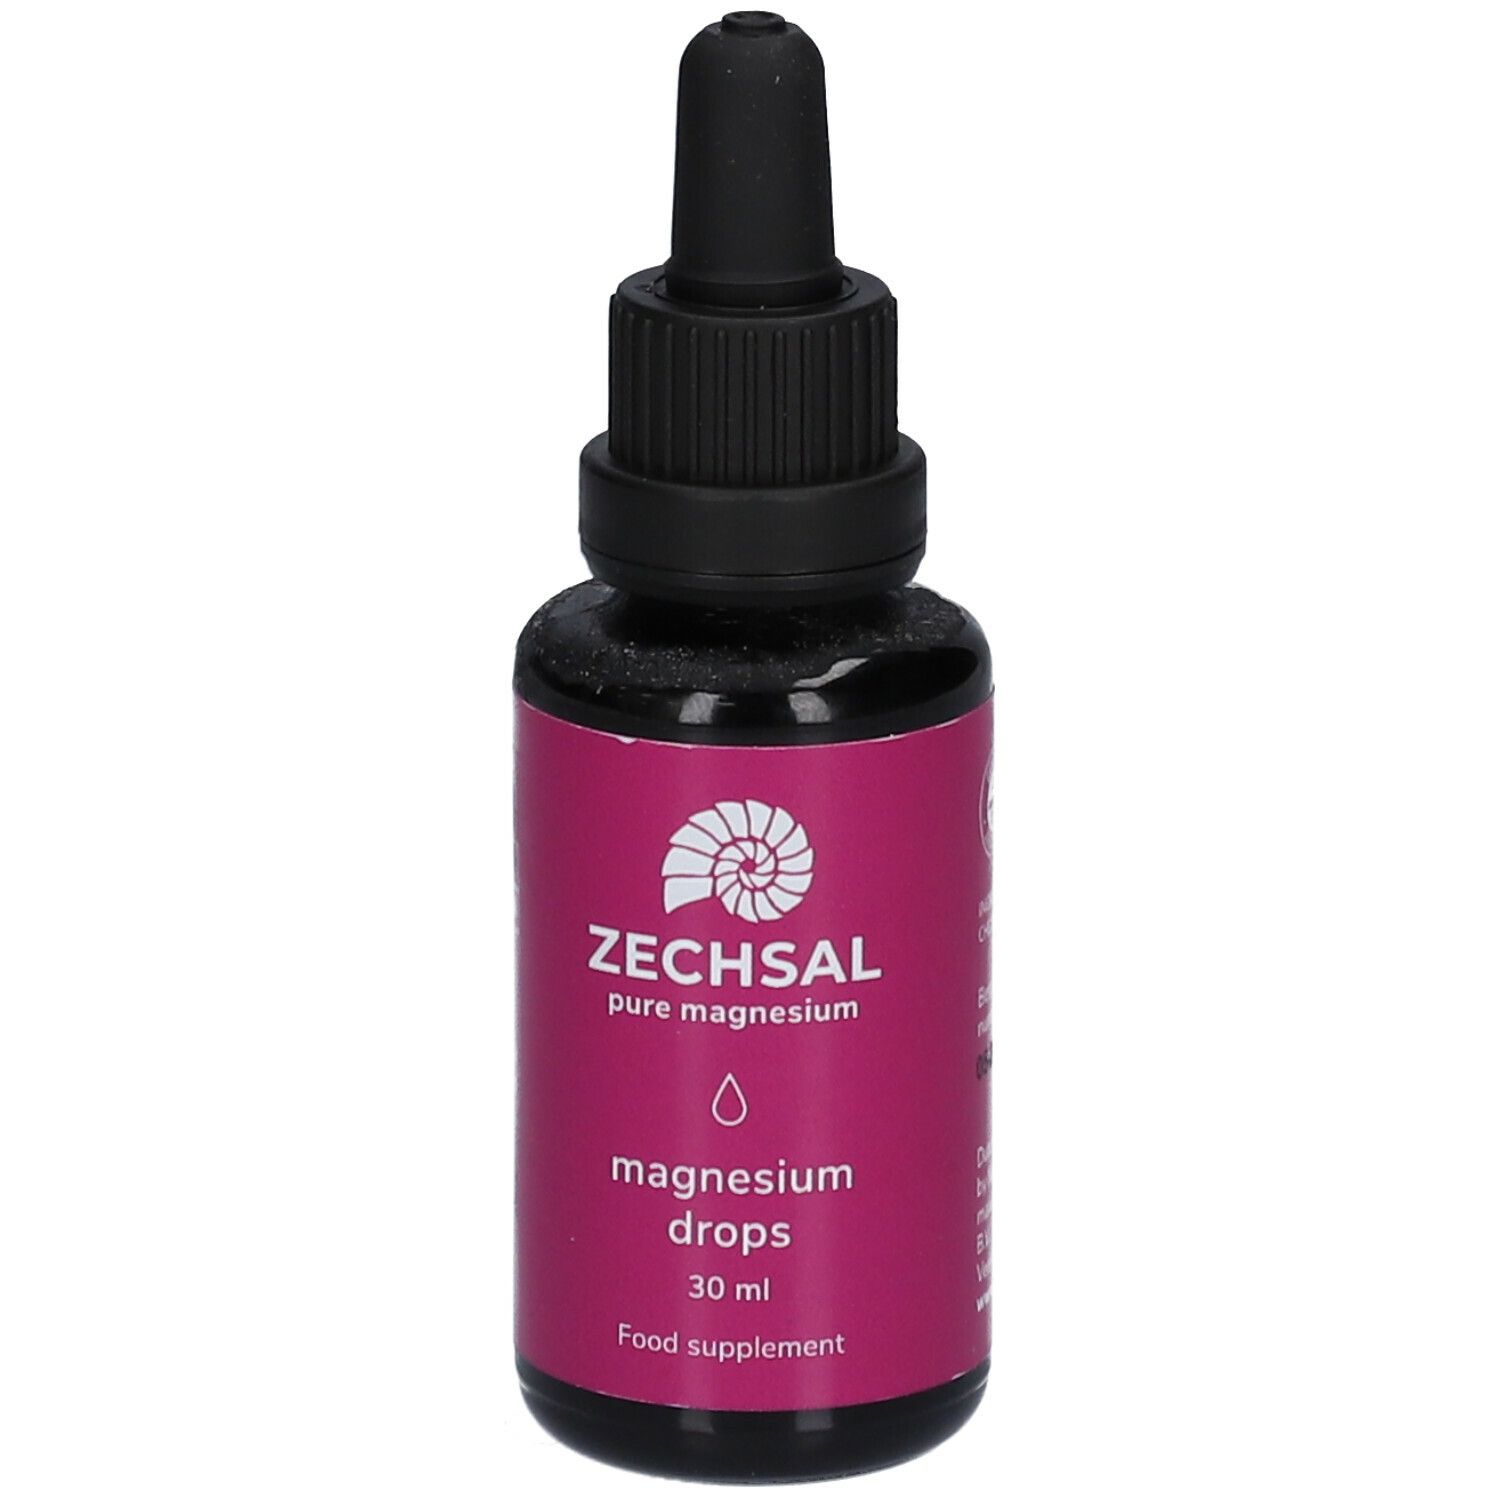 ZECHSAL magnesium drops